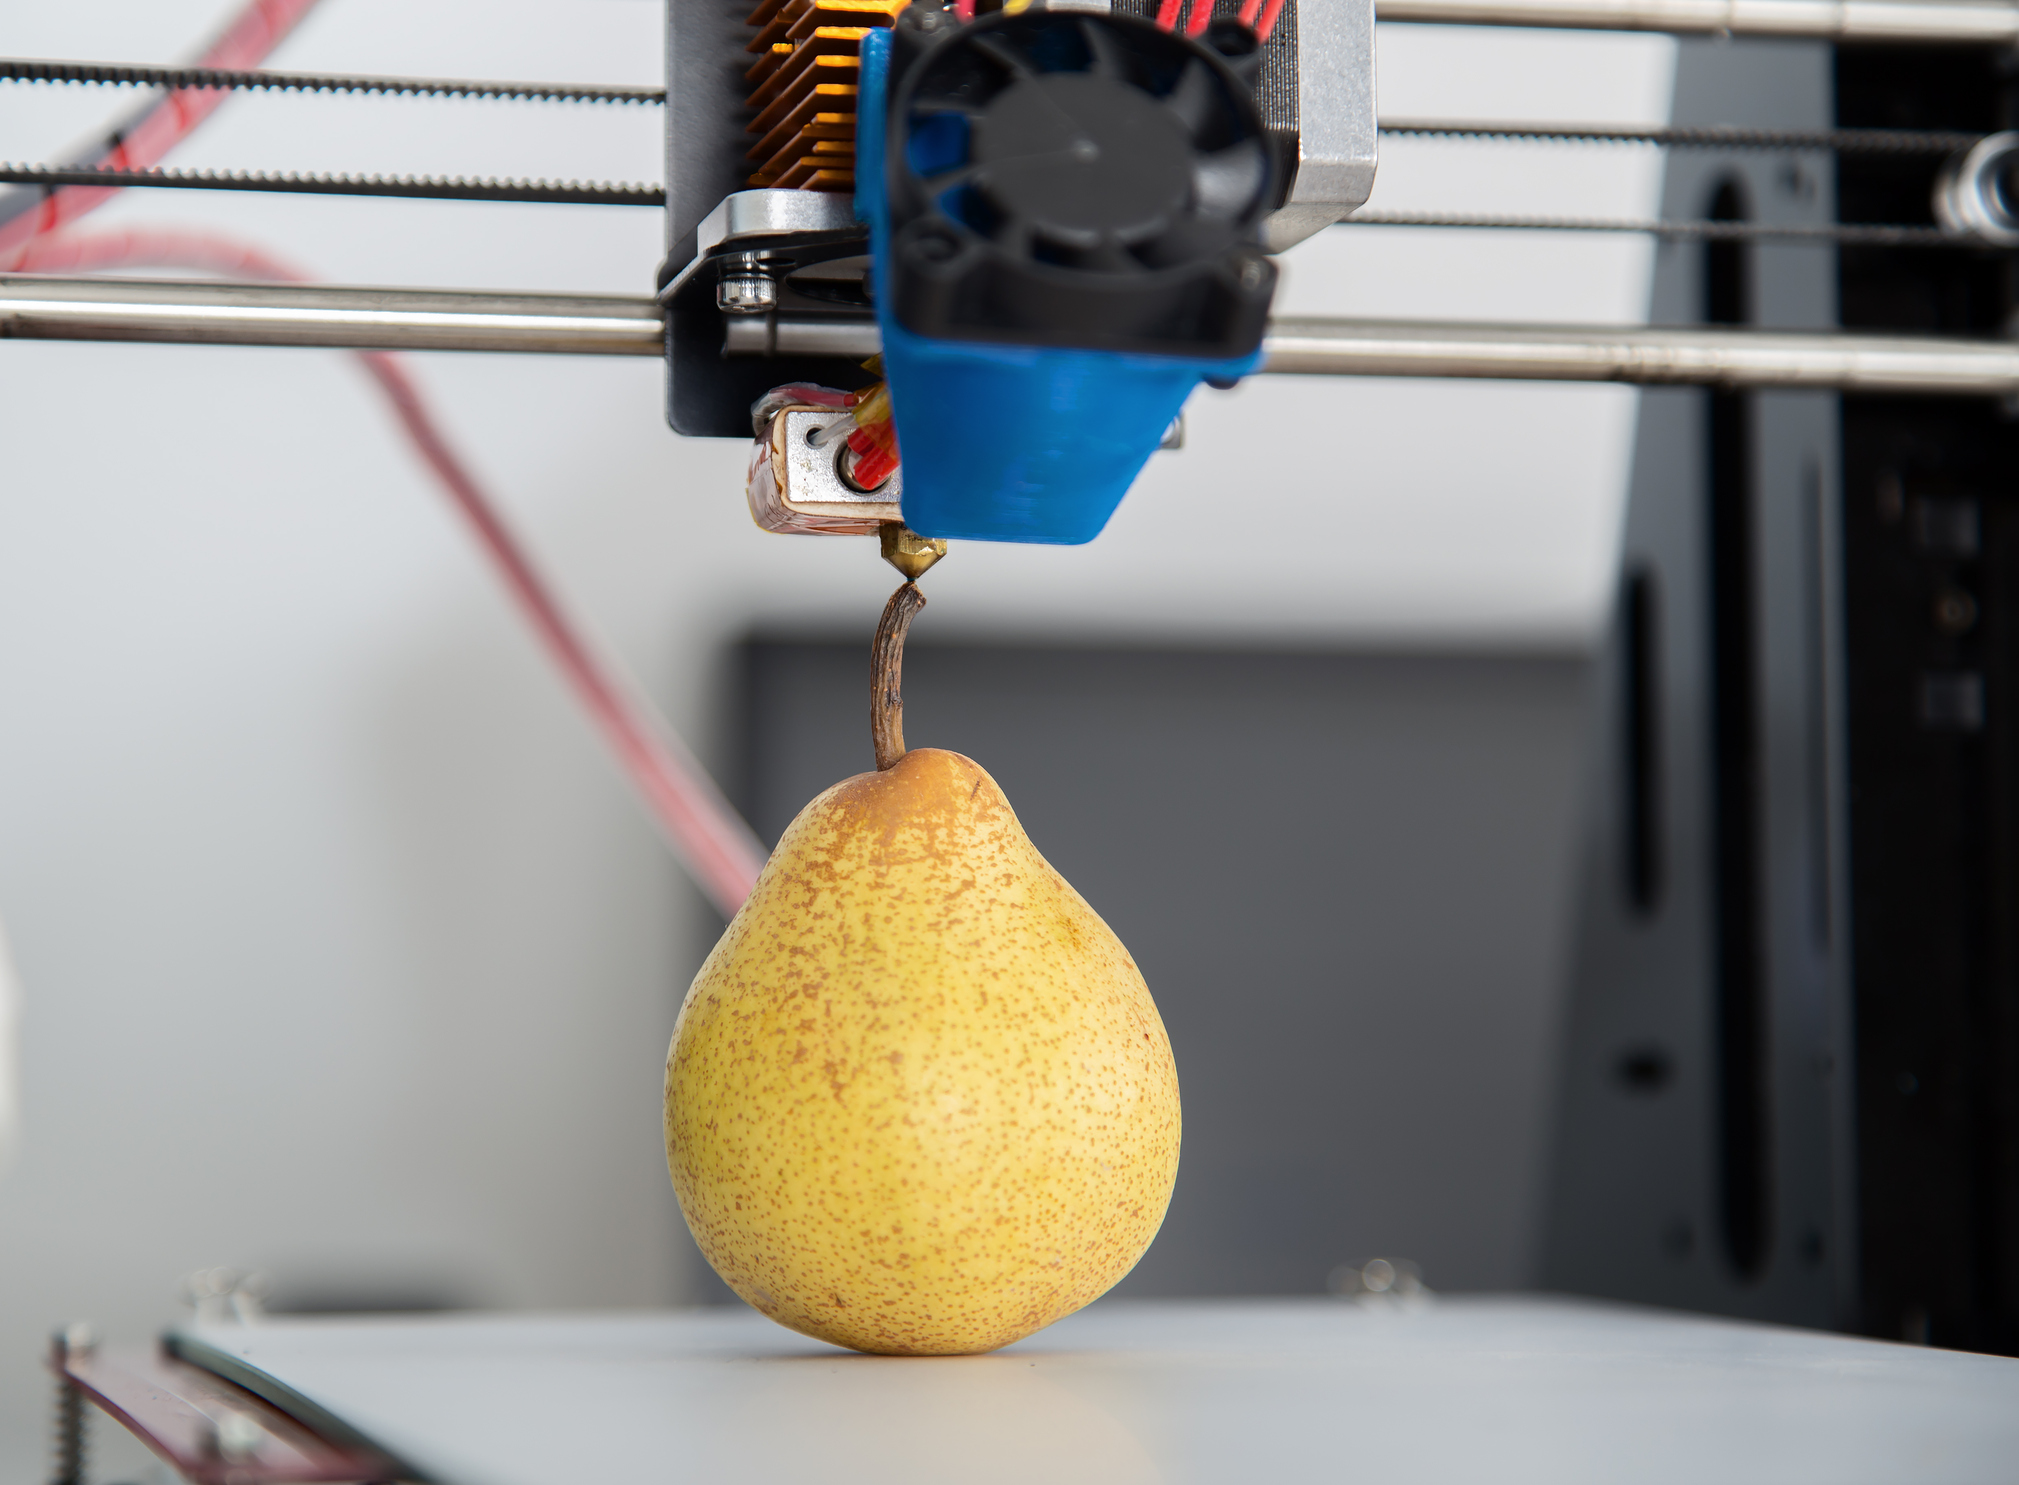 3D Printing ripe juicy pear (Thinkstock/PA)